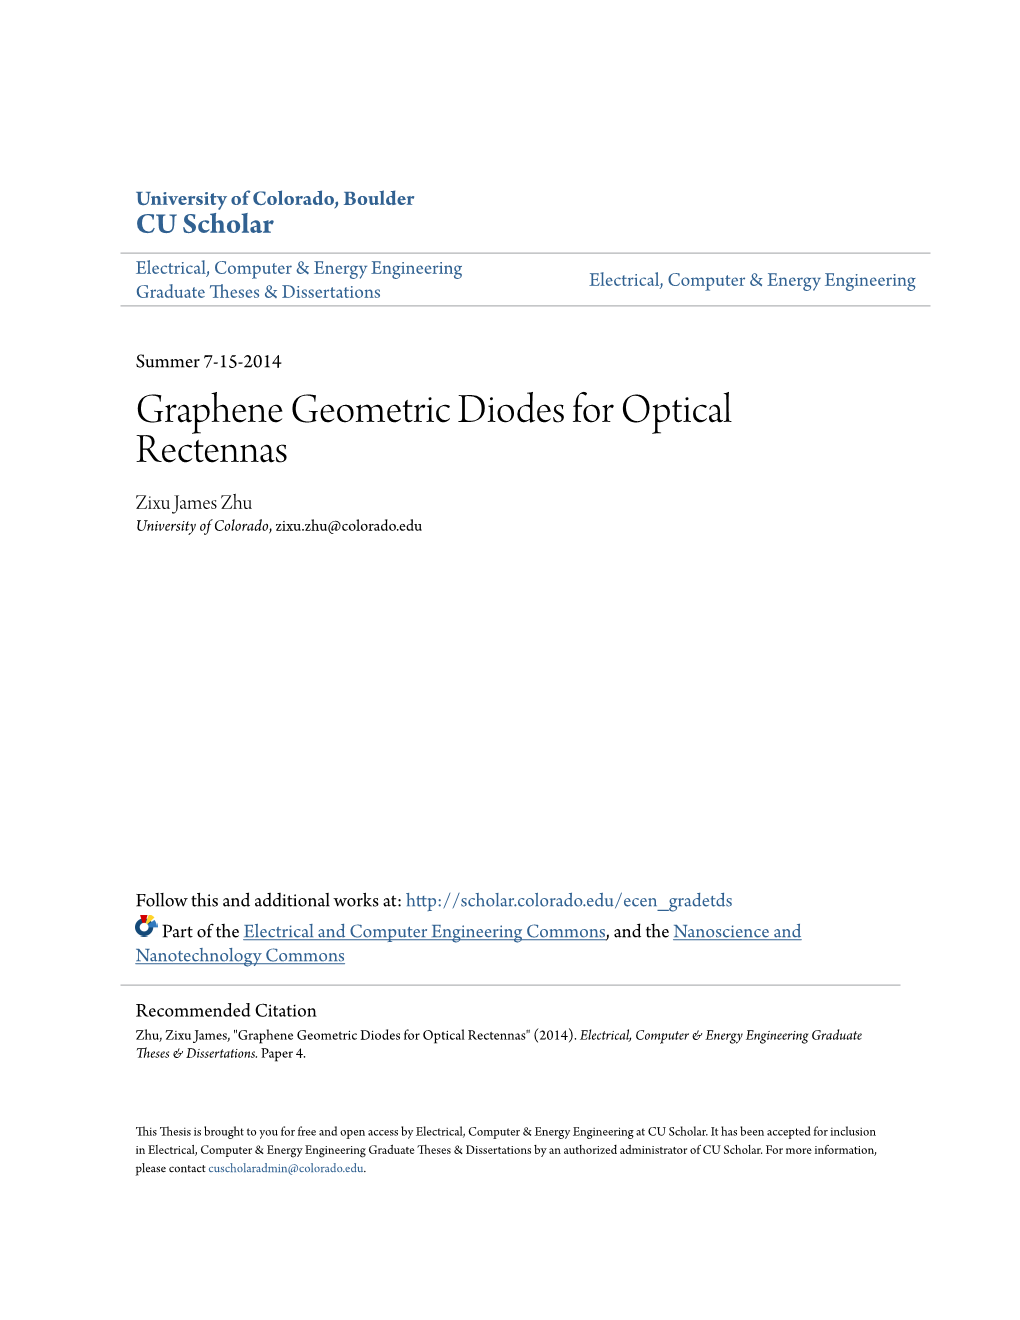 Graphene Geometric Diodes for Optical Rectennas Zixu James Zhu University of Colorado, Zixu.Zhu@Colorado.Edu